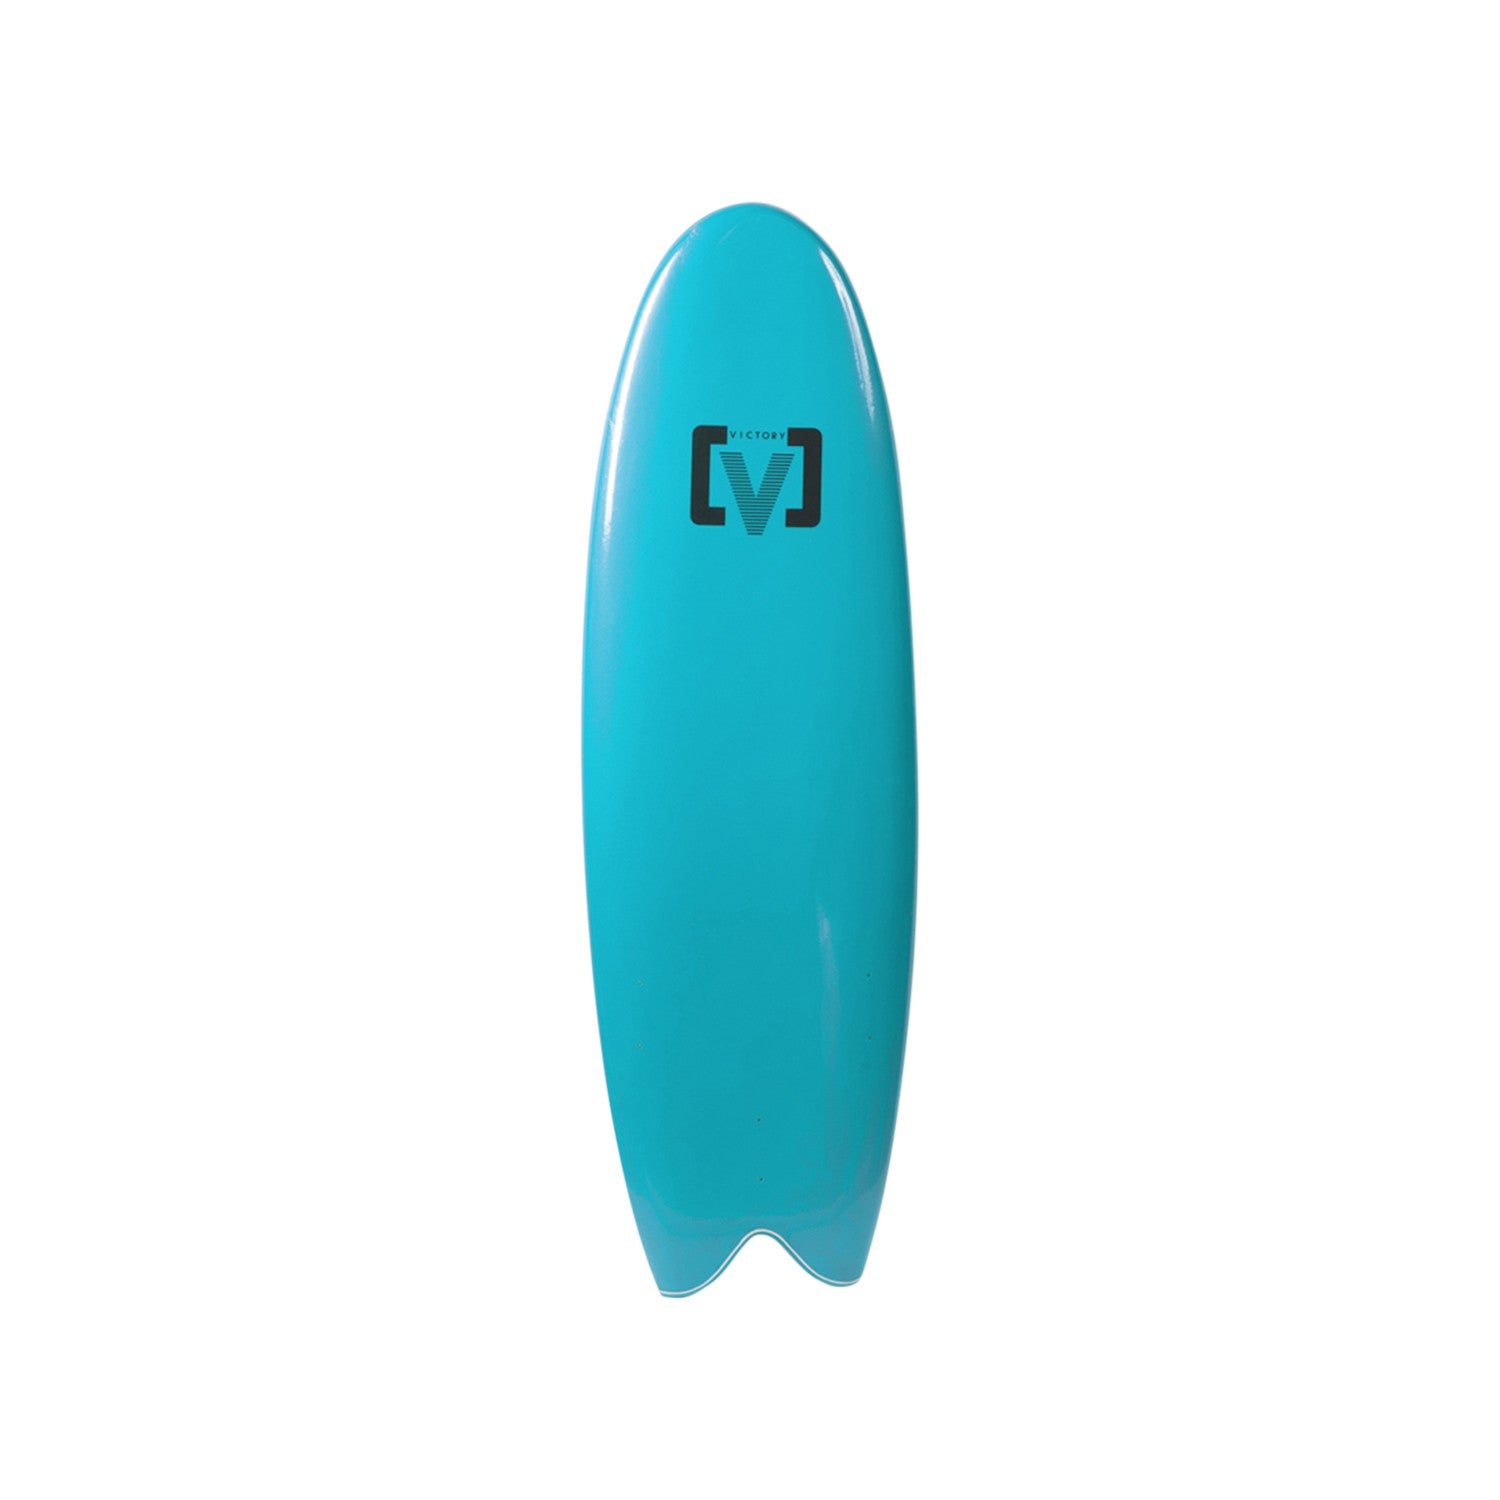 VICTORY - EPS Softboard - Foam Surfboard - Fish 5'6 - Light Blue